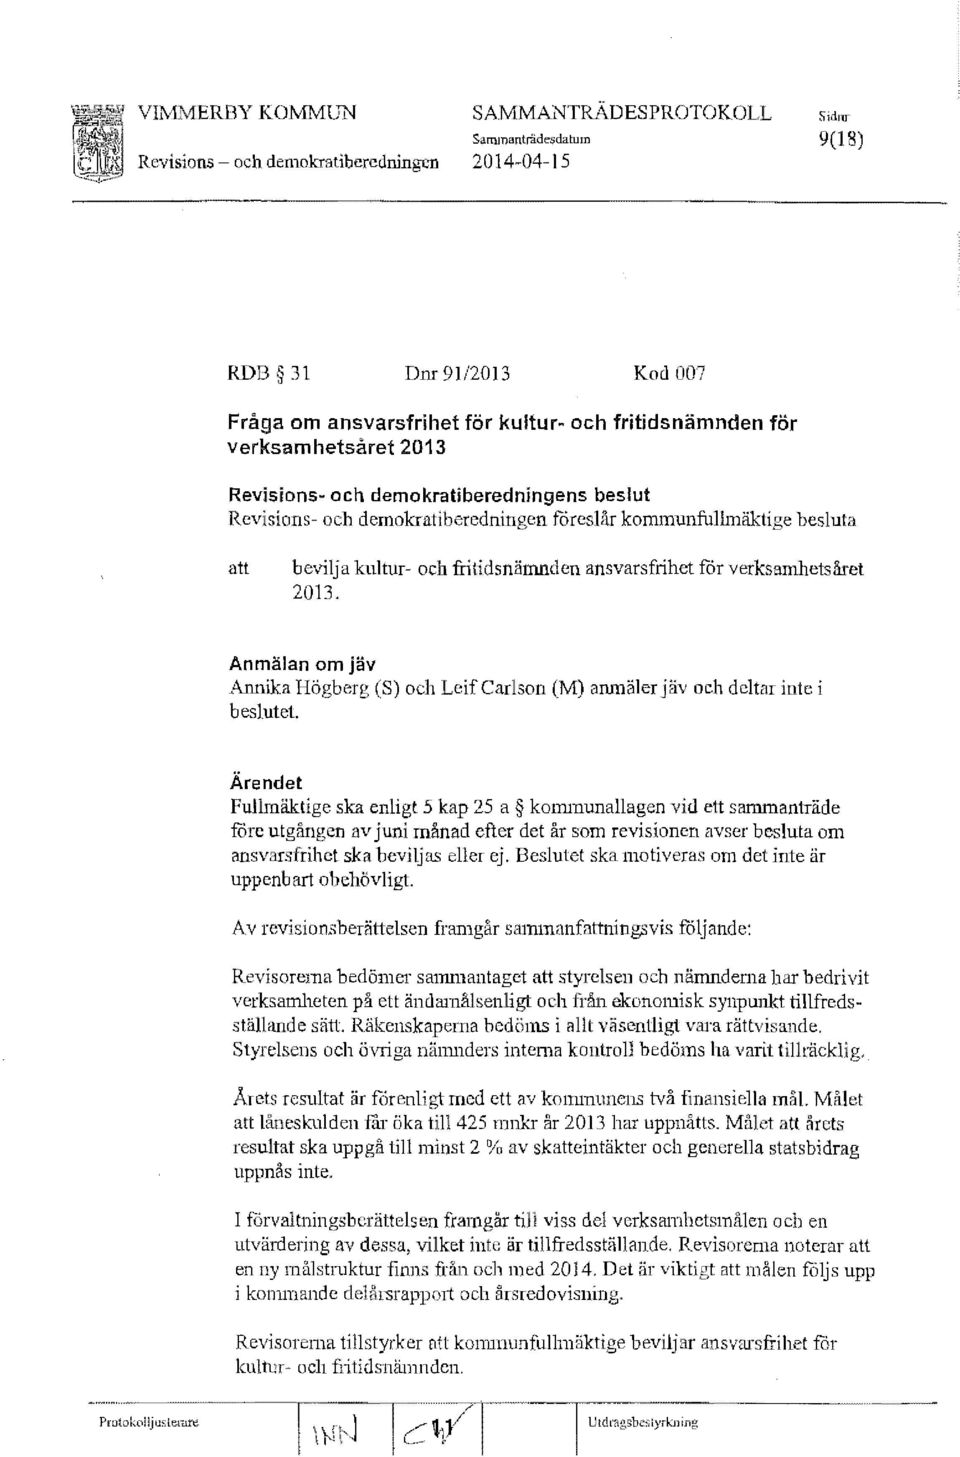 verksamhetsåret 2013. Anmälan om jäv Annika Högberg (S) och Leif Carlson (M) anmäler jäv och deltar inte i beslutet.